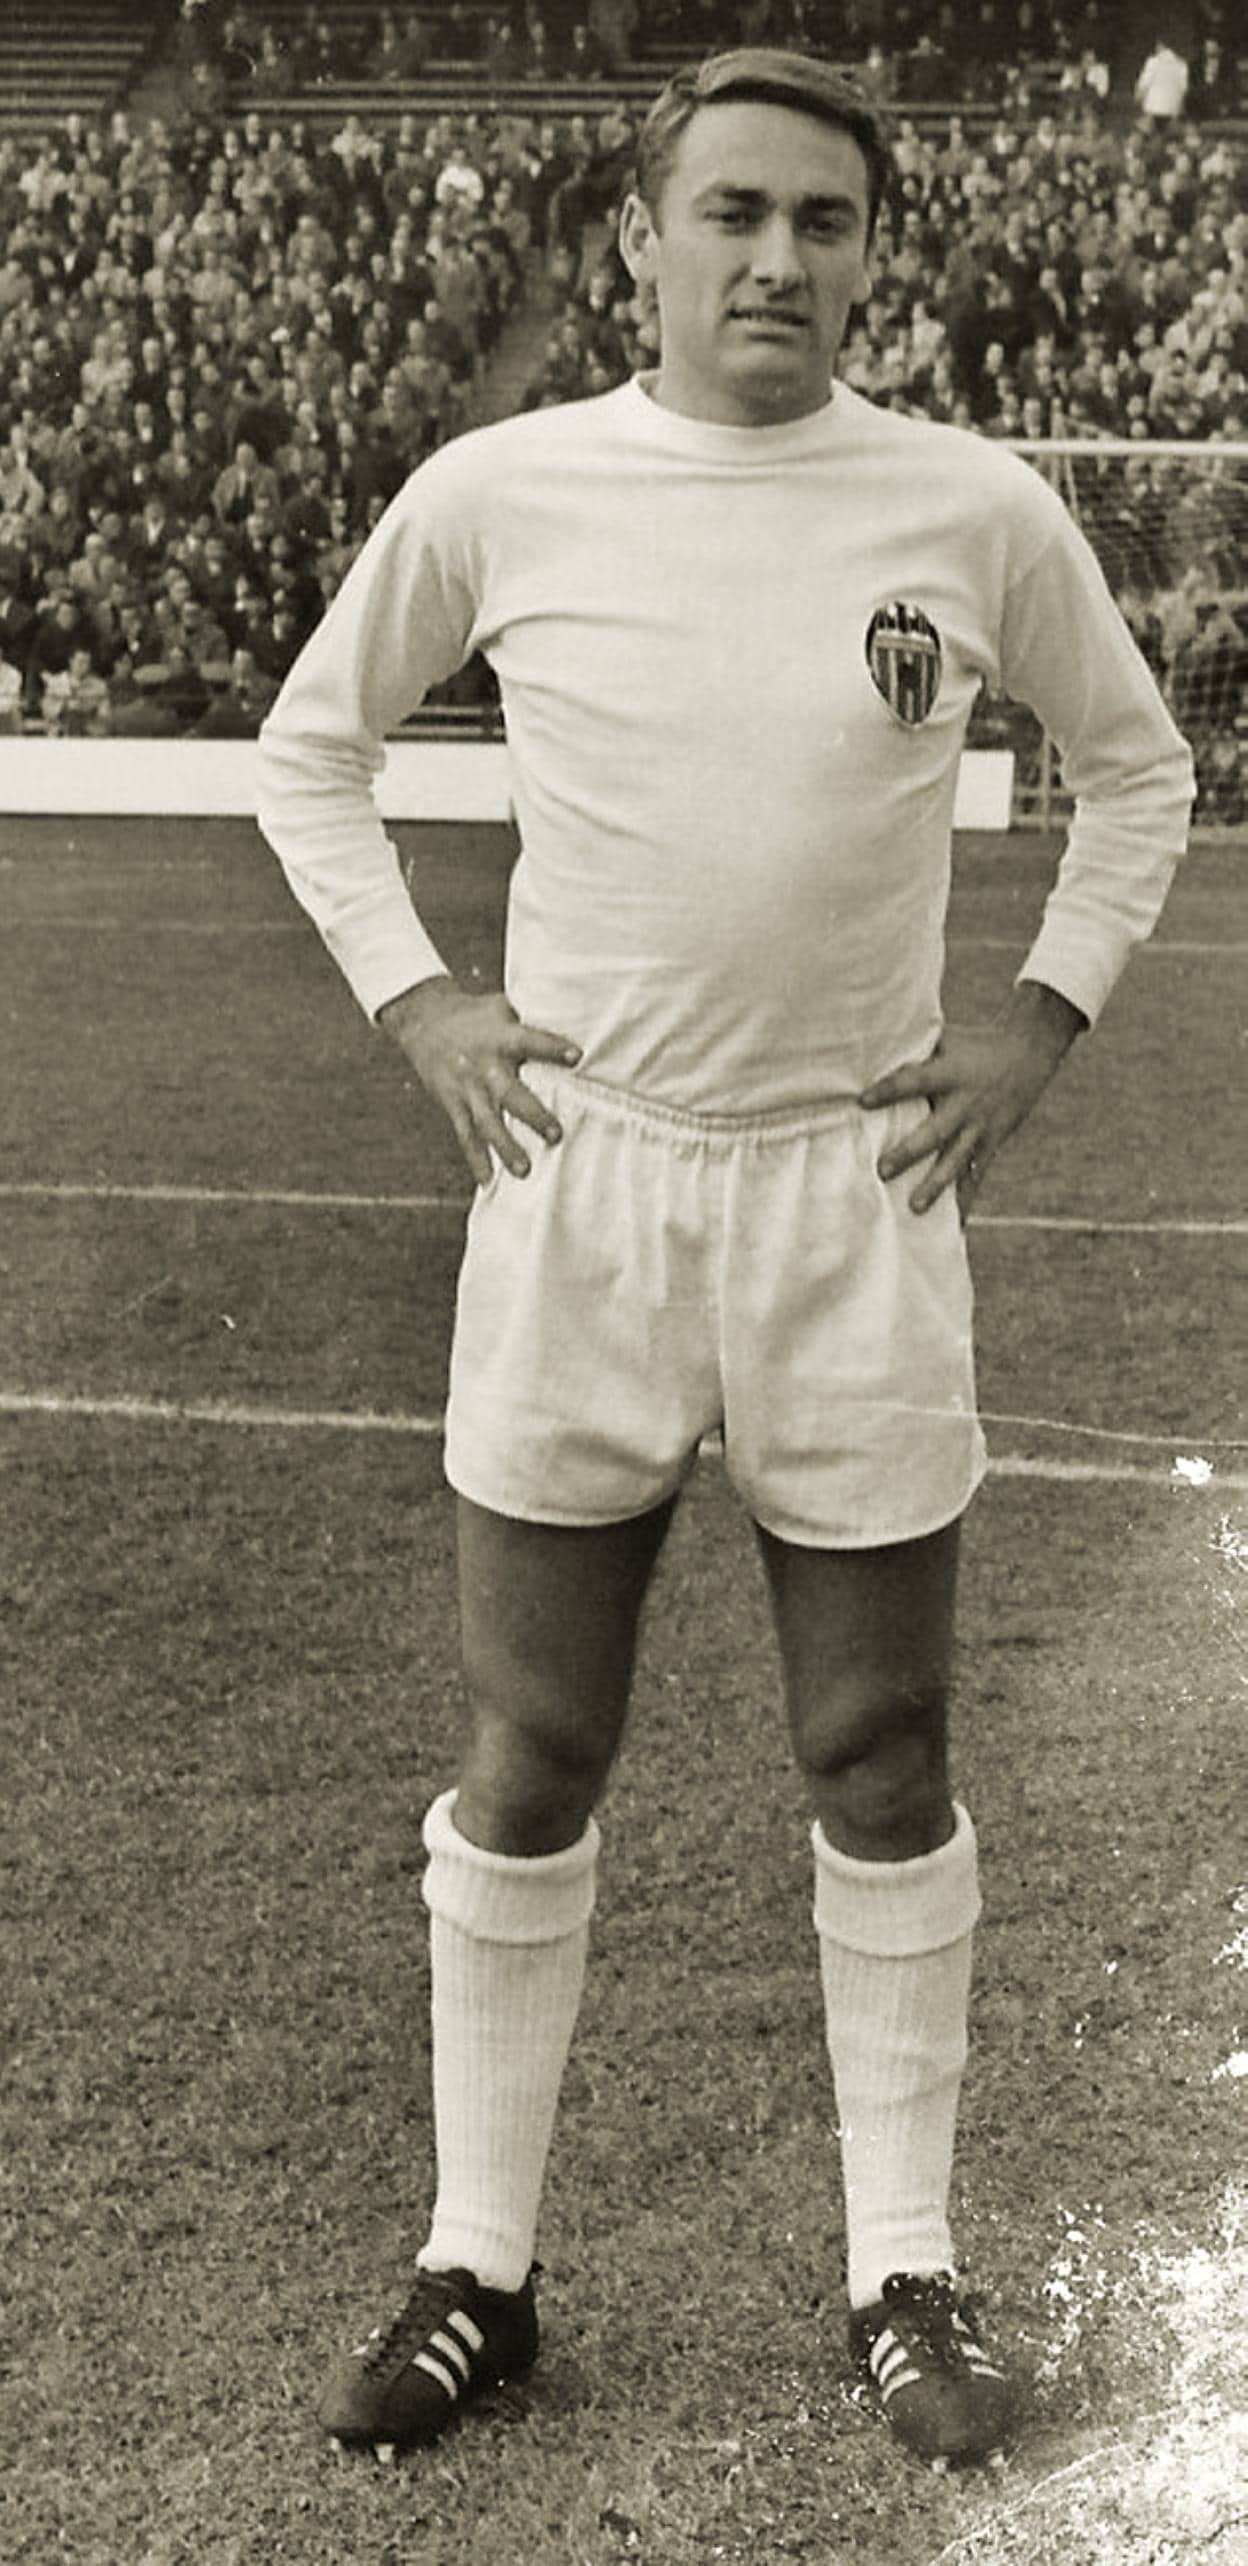  Excepcional. Tatono, que destacaba por su clase, en el estadio Manzanares en el curso 66-67. 